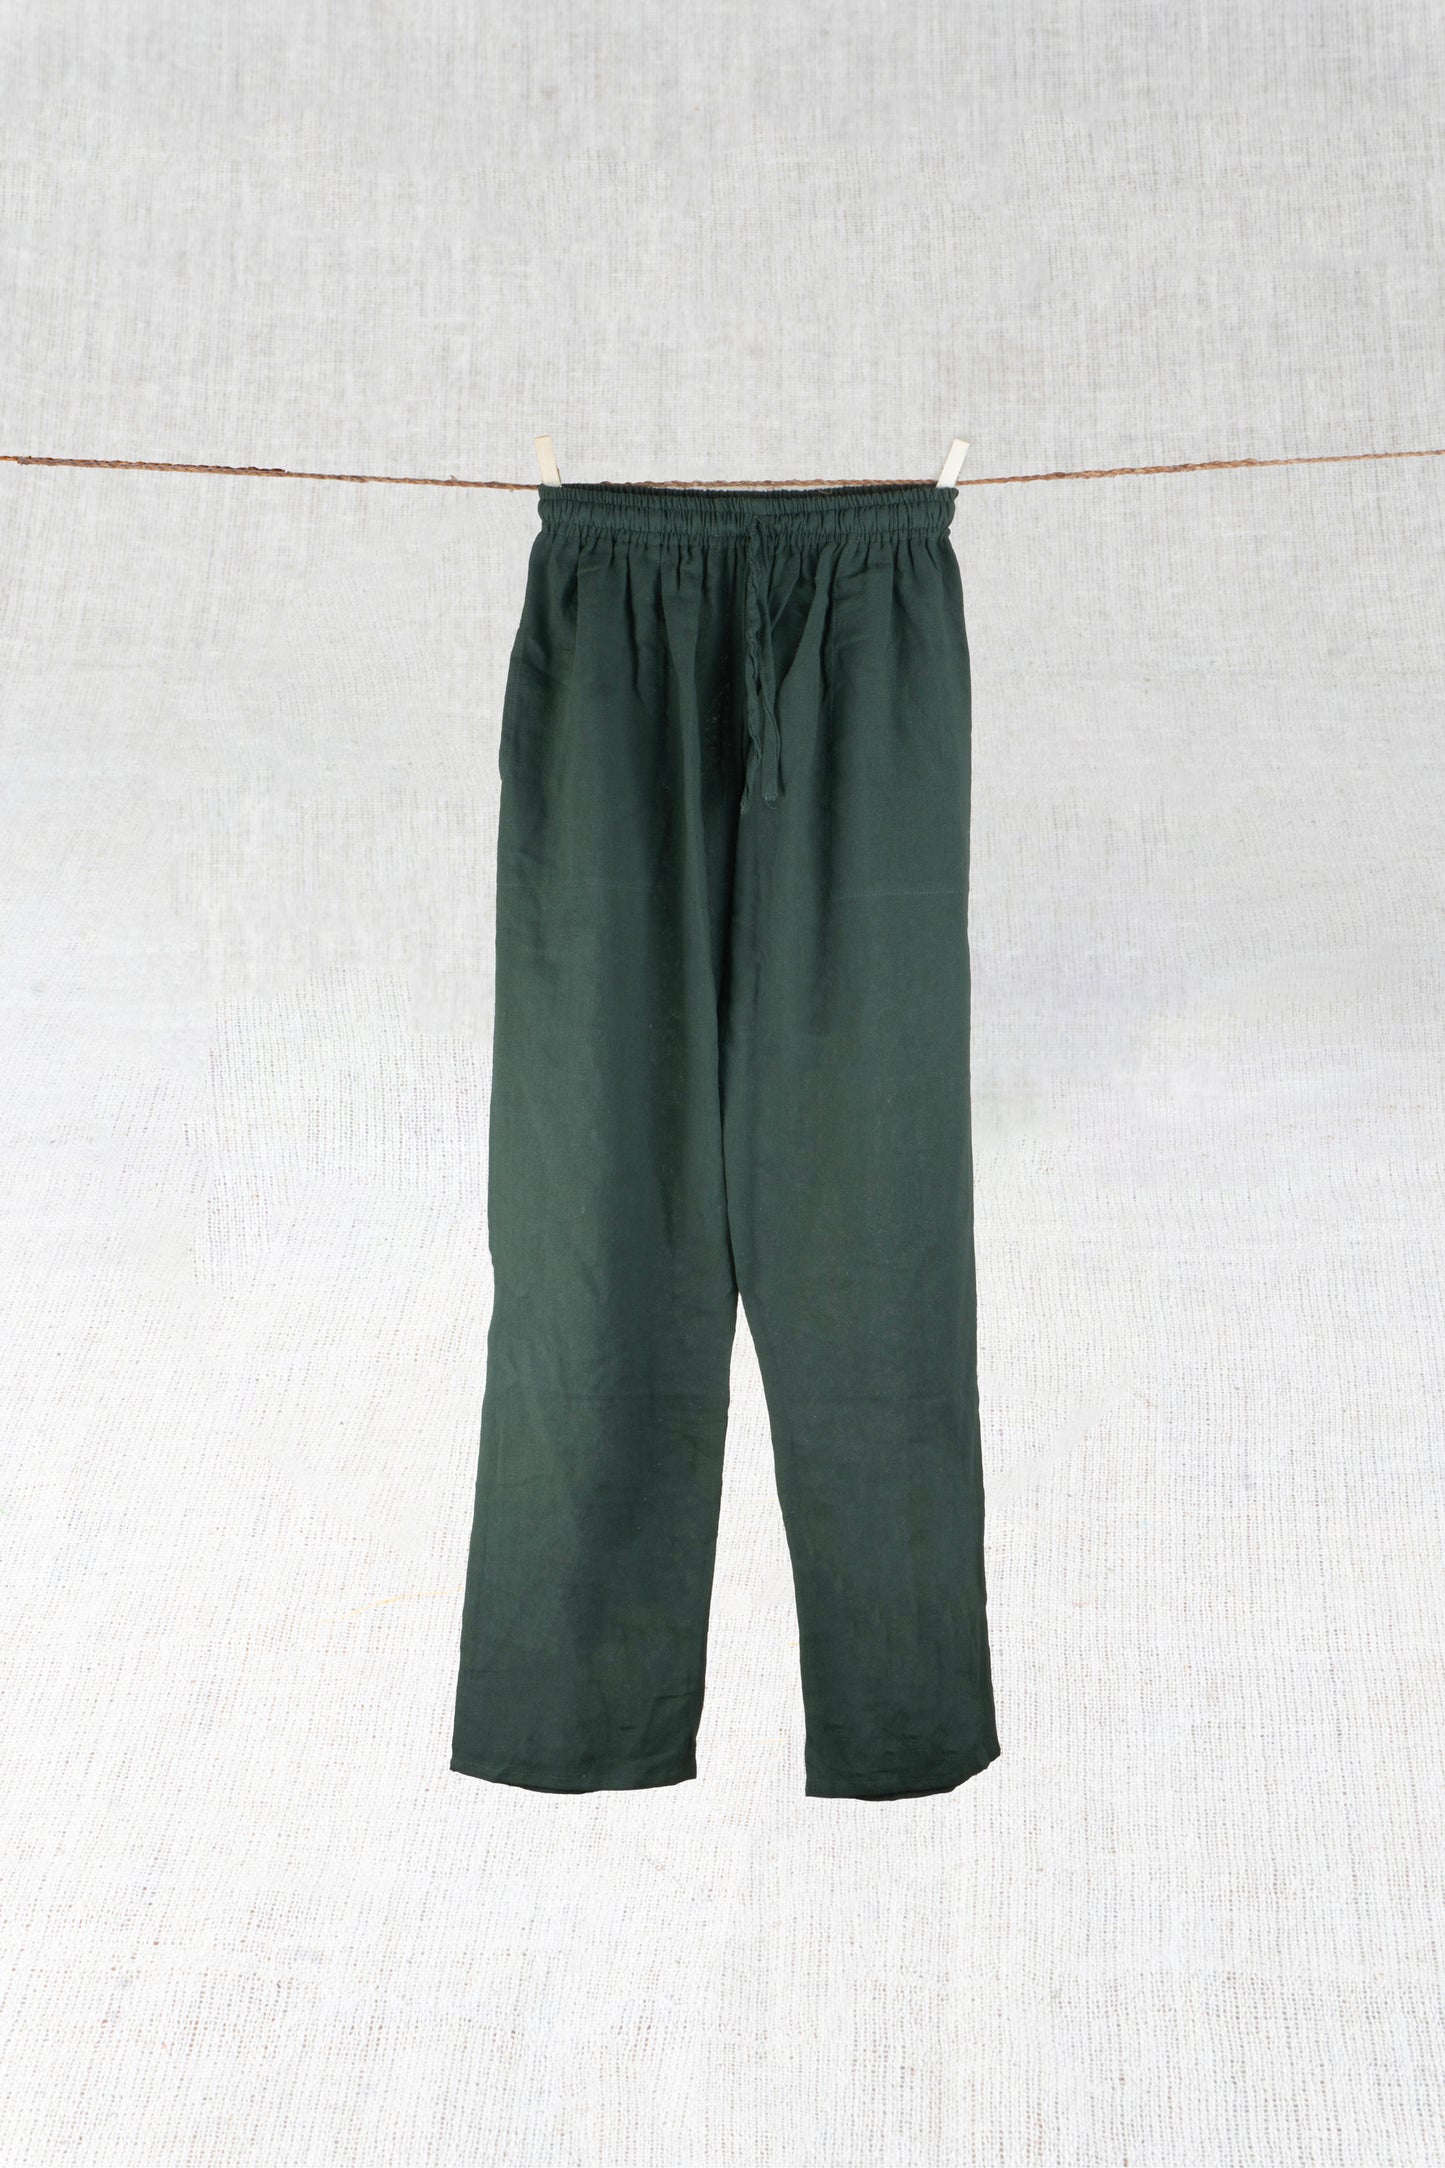 Pine Green Hemp Pants